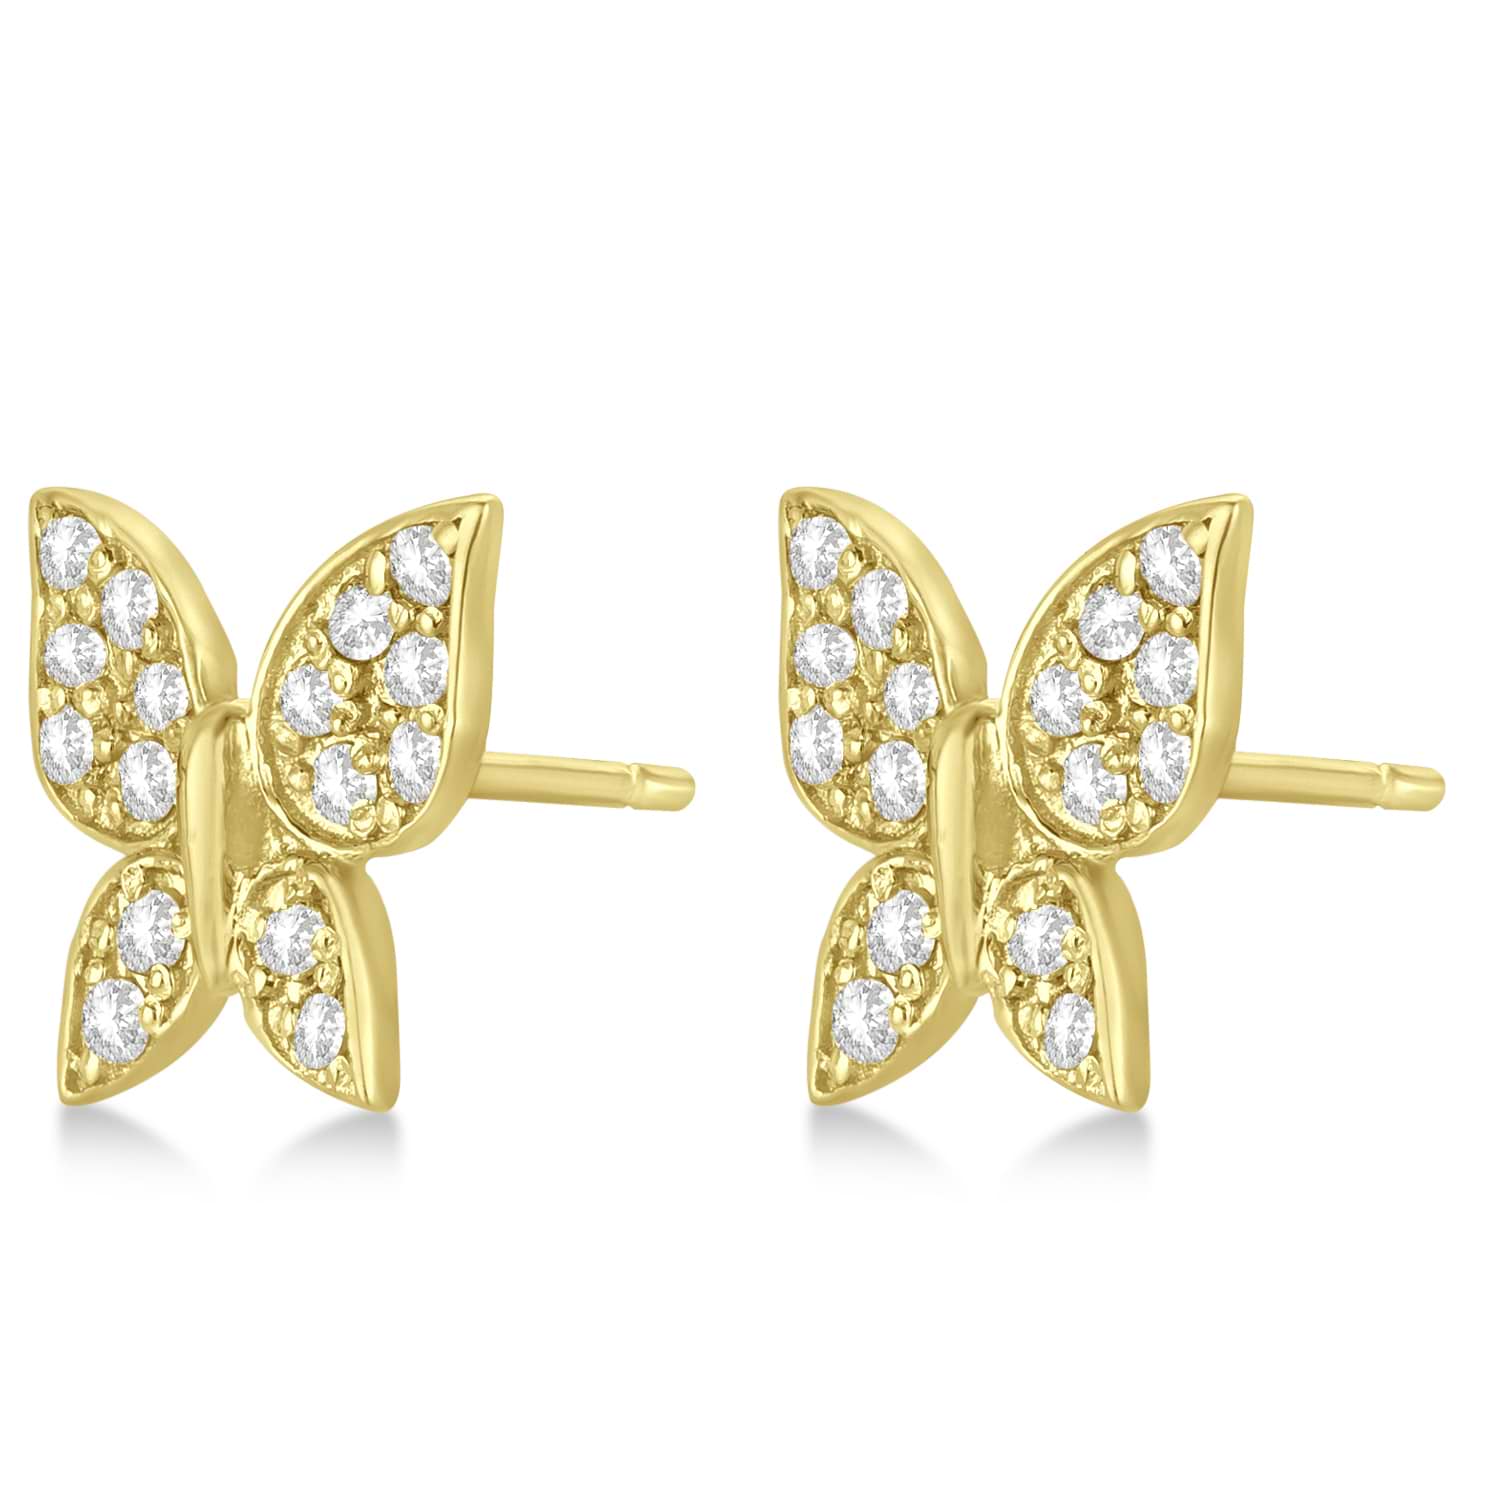 Diamond Butterfly Stud Earrings 14k Yellow Gold (0.30ct)